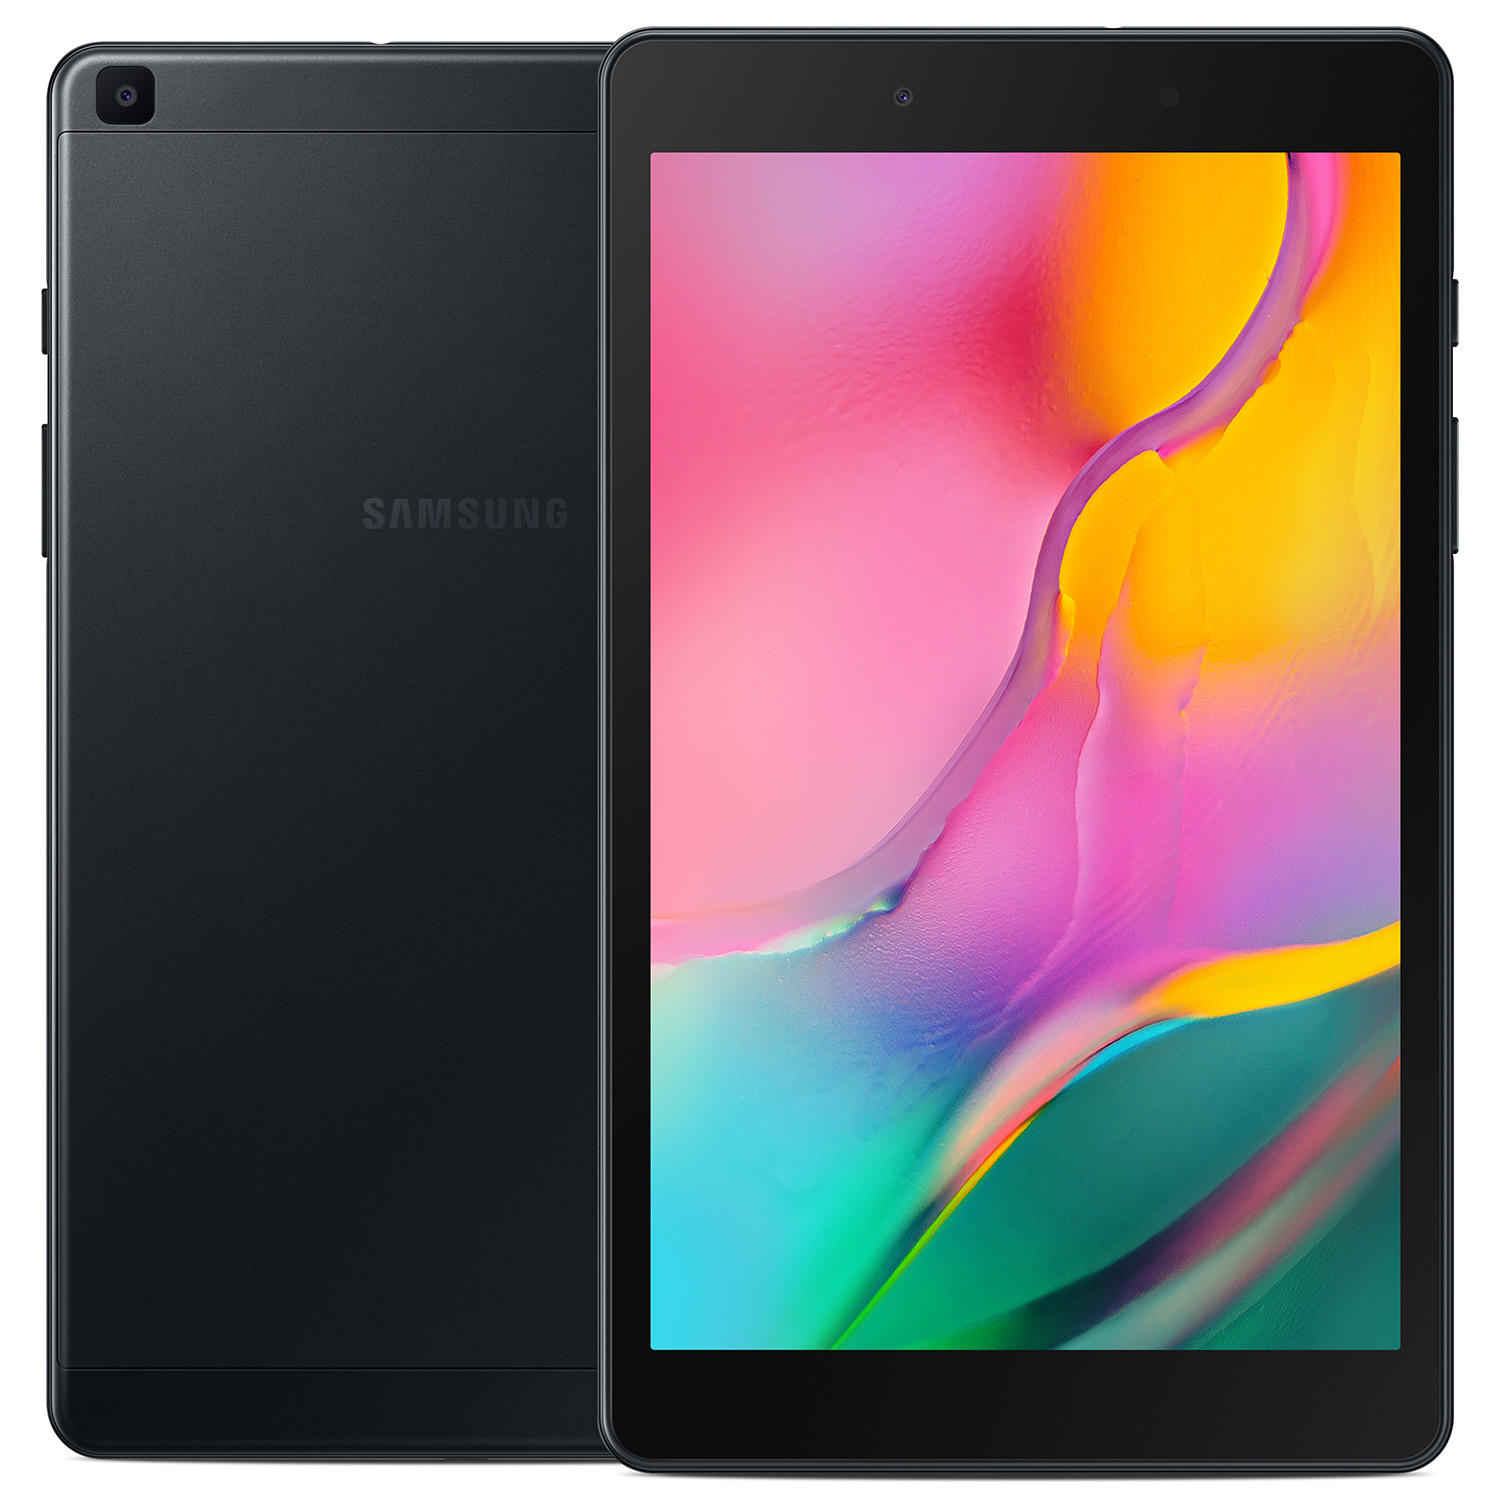 Samsung Galaxy Tab (SM-T290NZKCXAR) A 8.0″ 32GB with Wi-Fi + 32GB micro SD Card